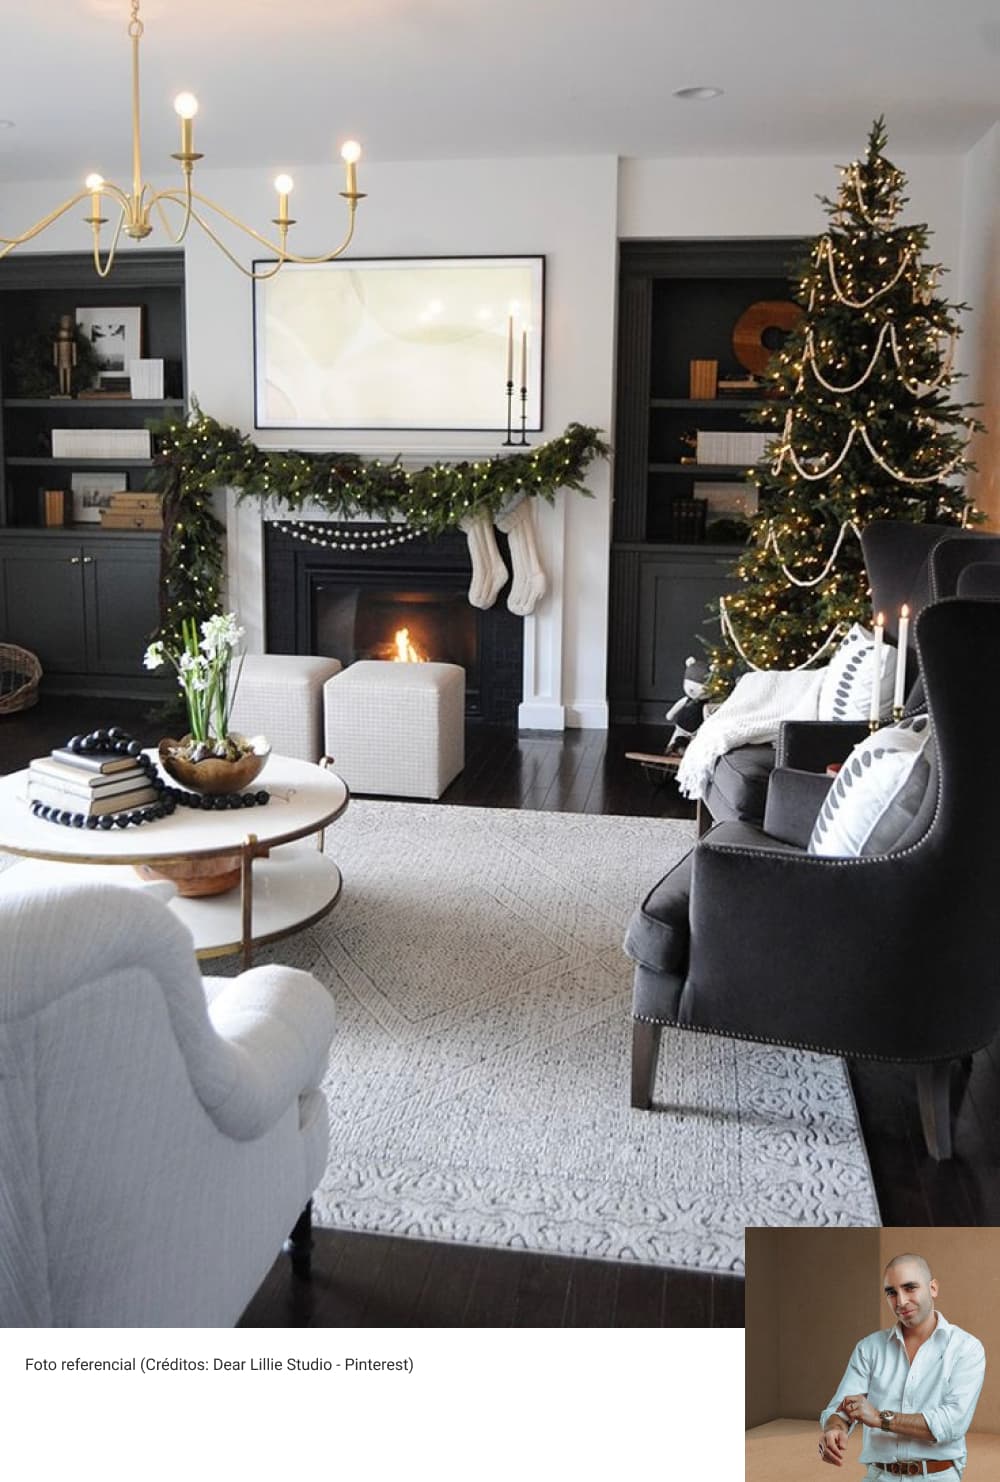 Tips para decorar tu casa en navidad, escoge un concepto